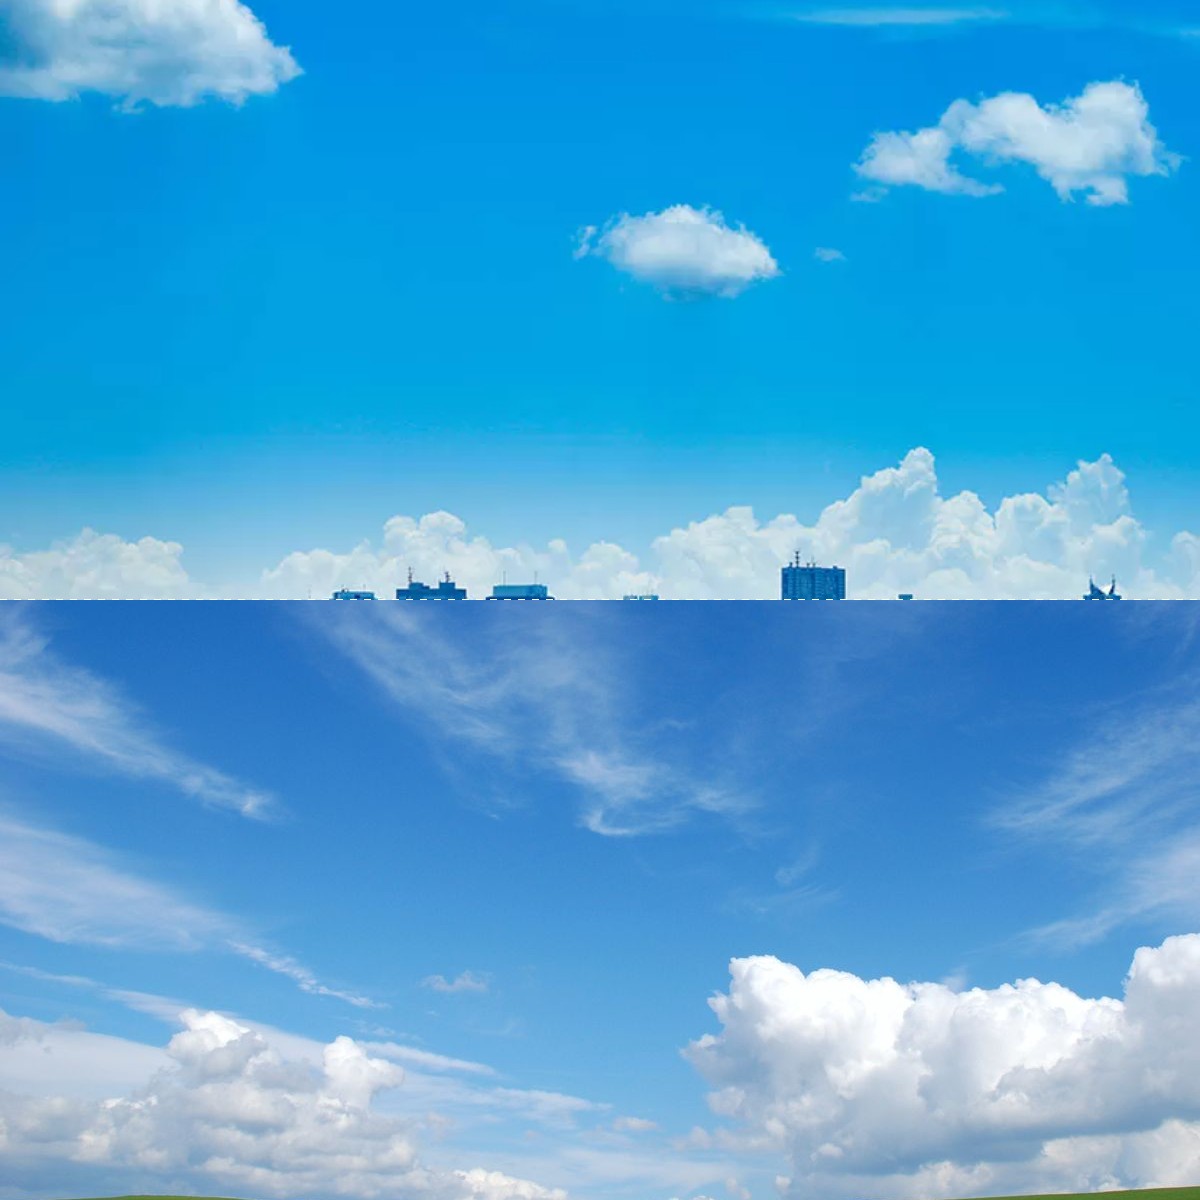 Fenomena Ilmiah di Balik Warna Biru Langit, Ini Penjelasannya!